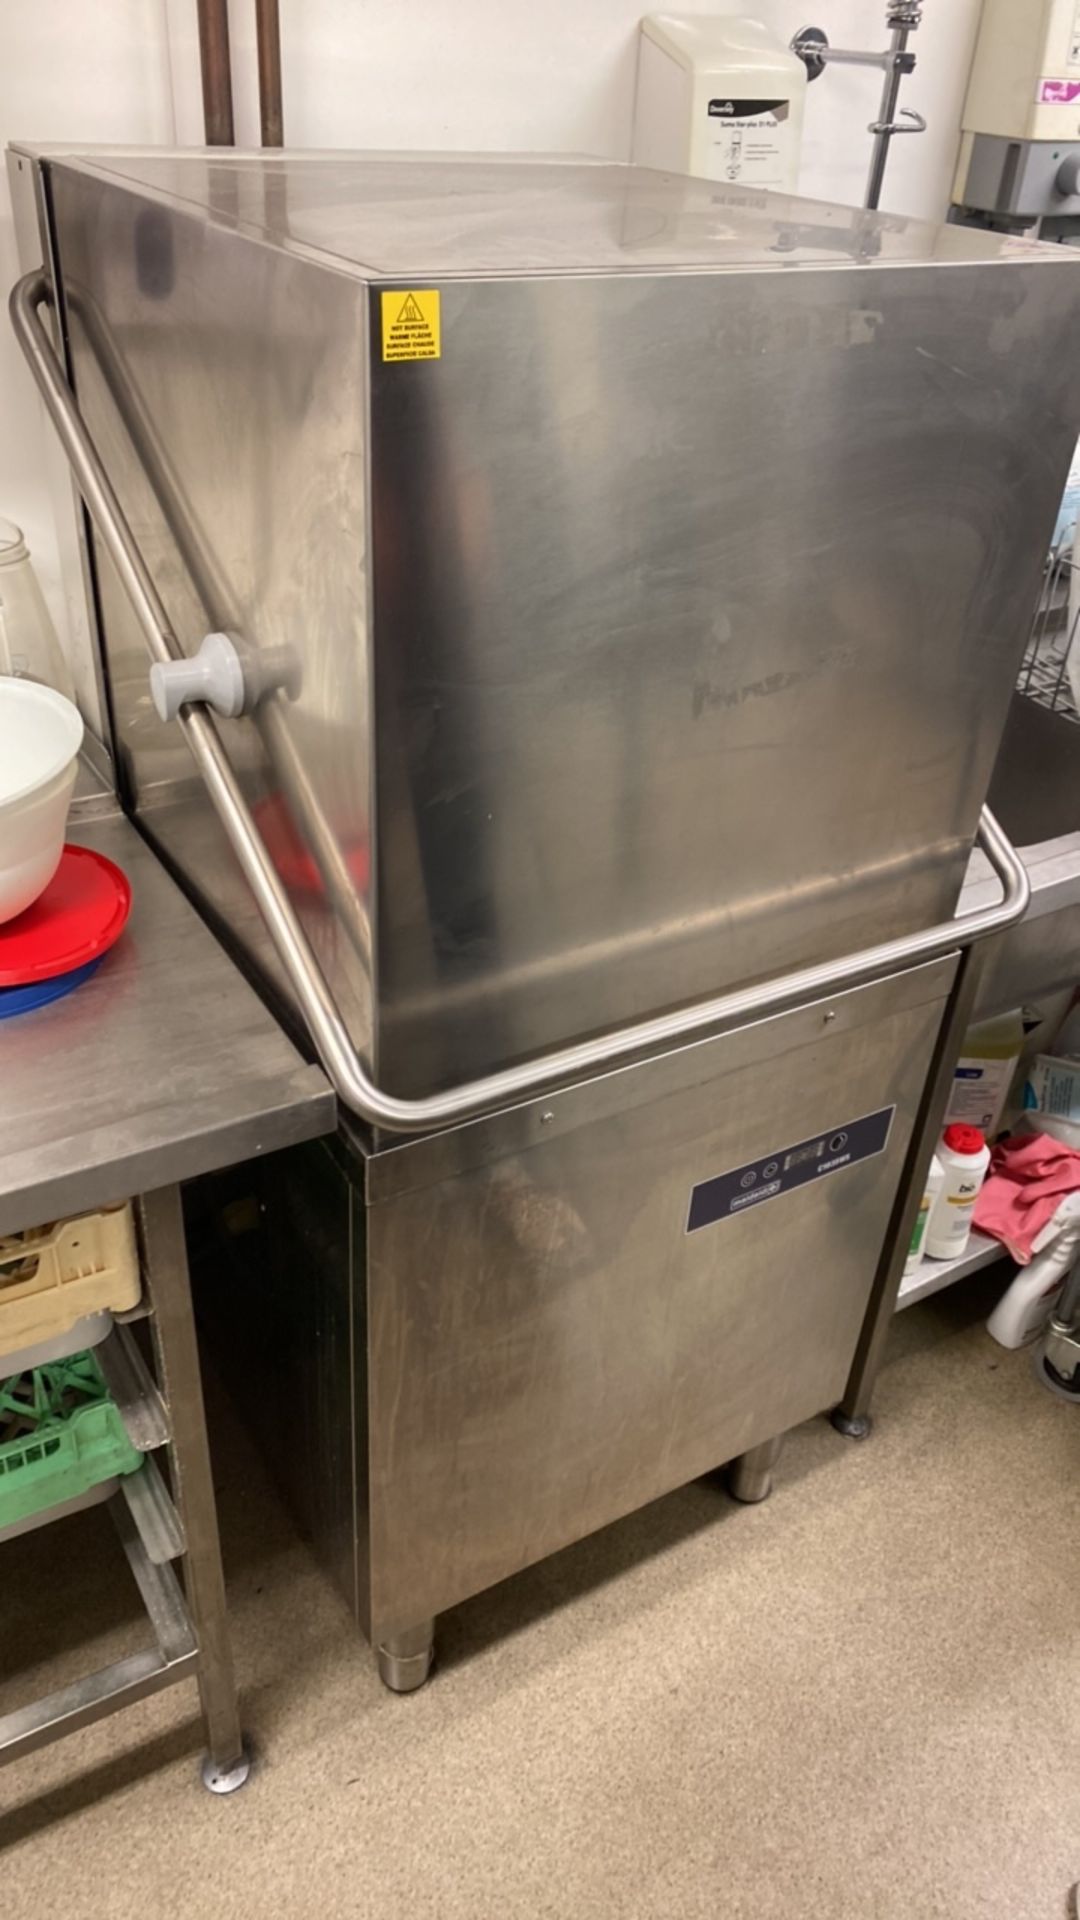 Maidaid C1035WS pass through dishwasher with drain